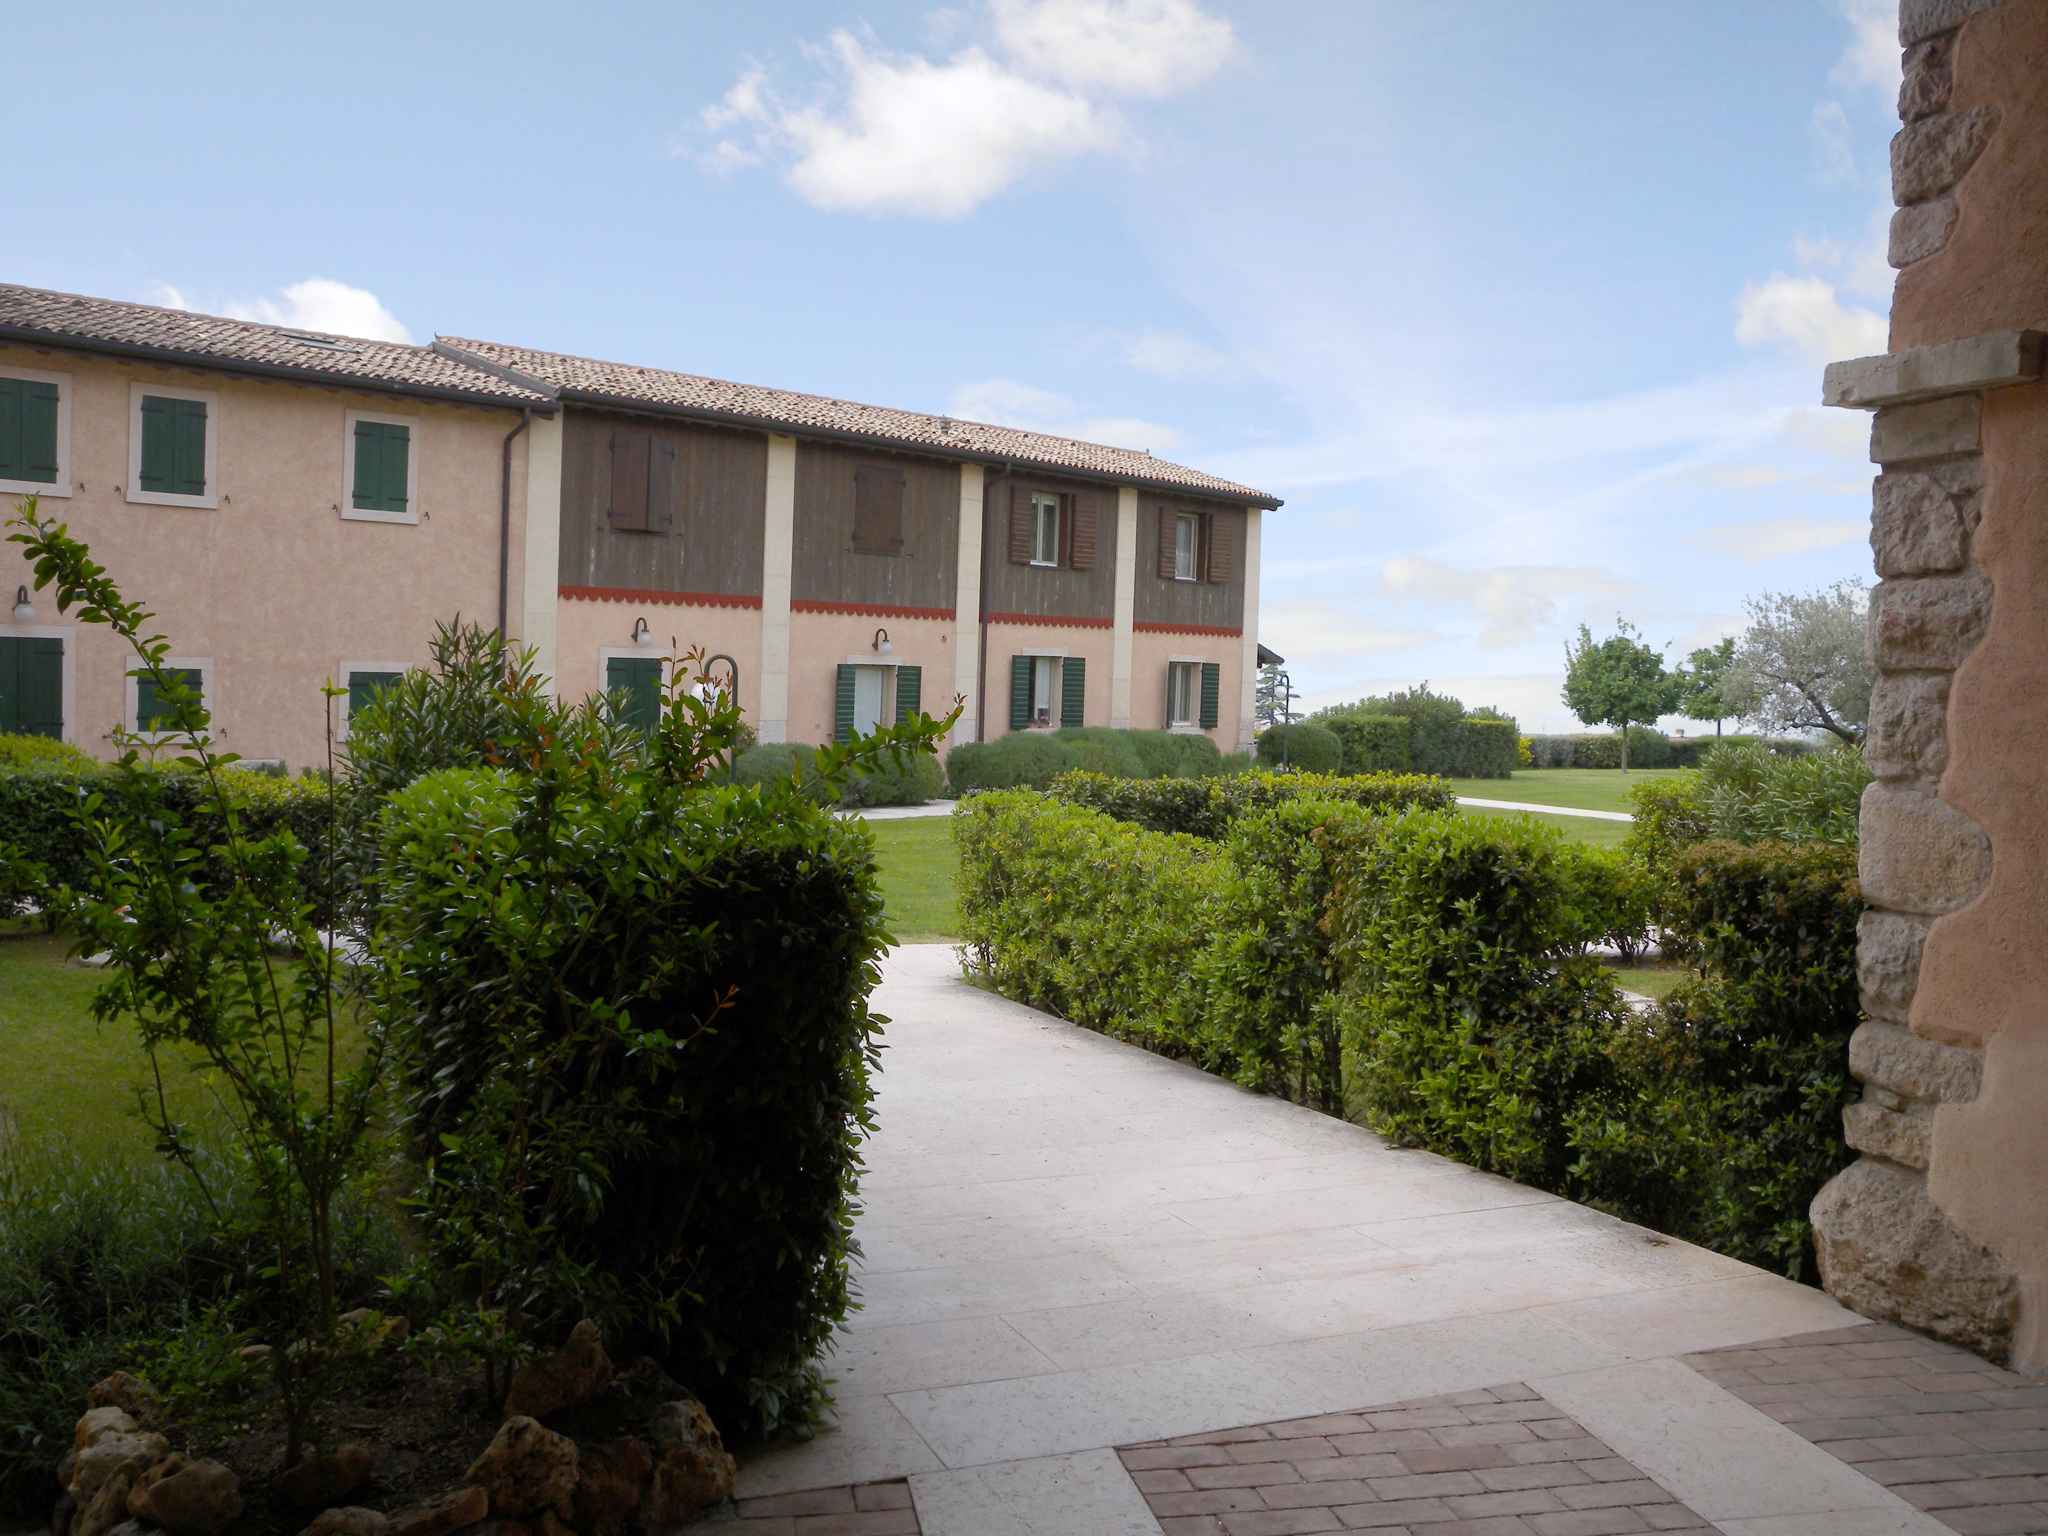 Ferienwohnung Residenz I Cortivi (279528), Costermano sul Garda, Gardasee, Venetien, Italien, Bild 1